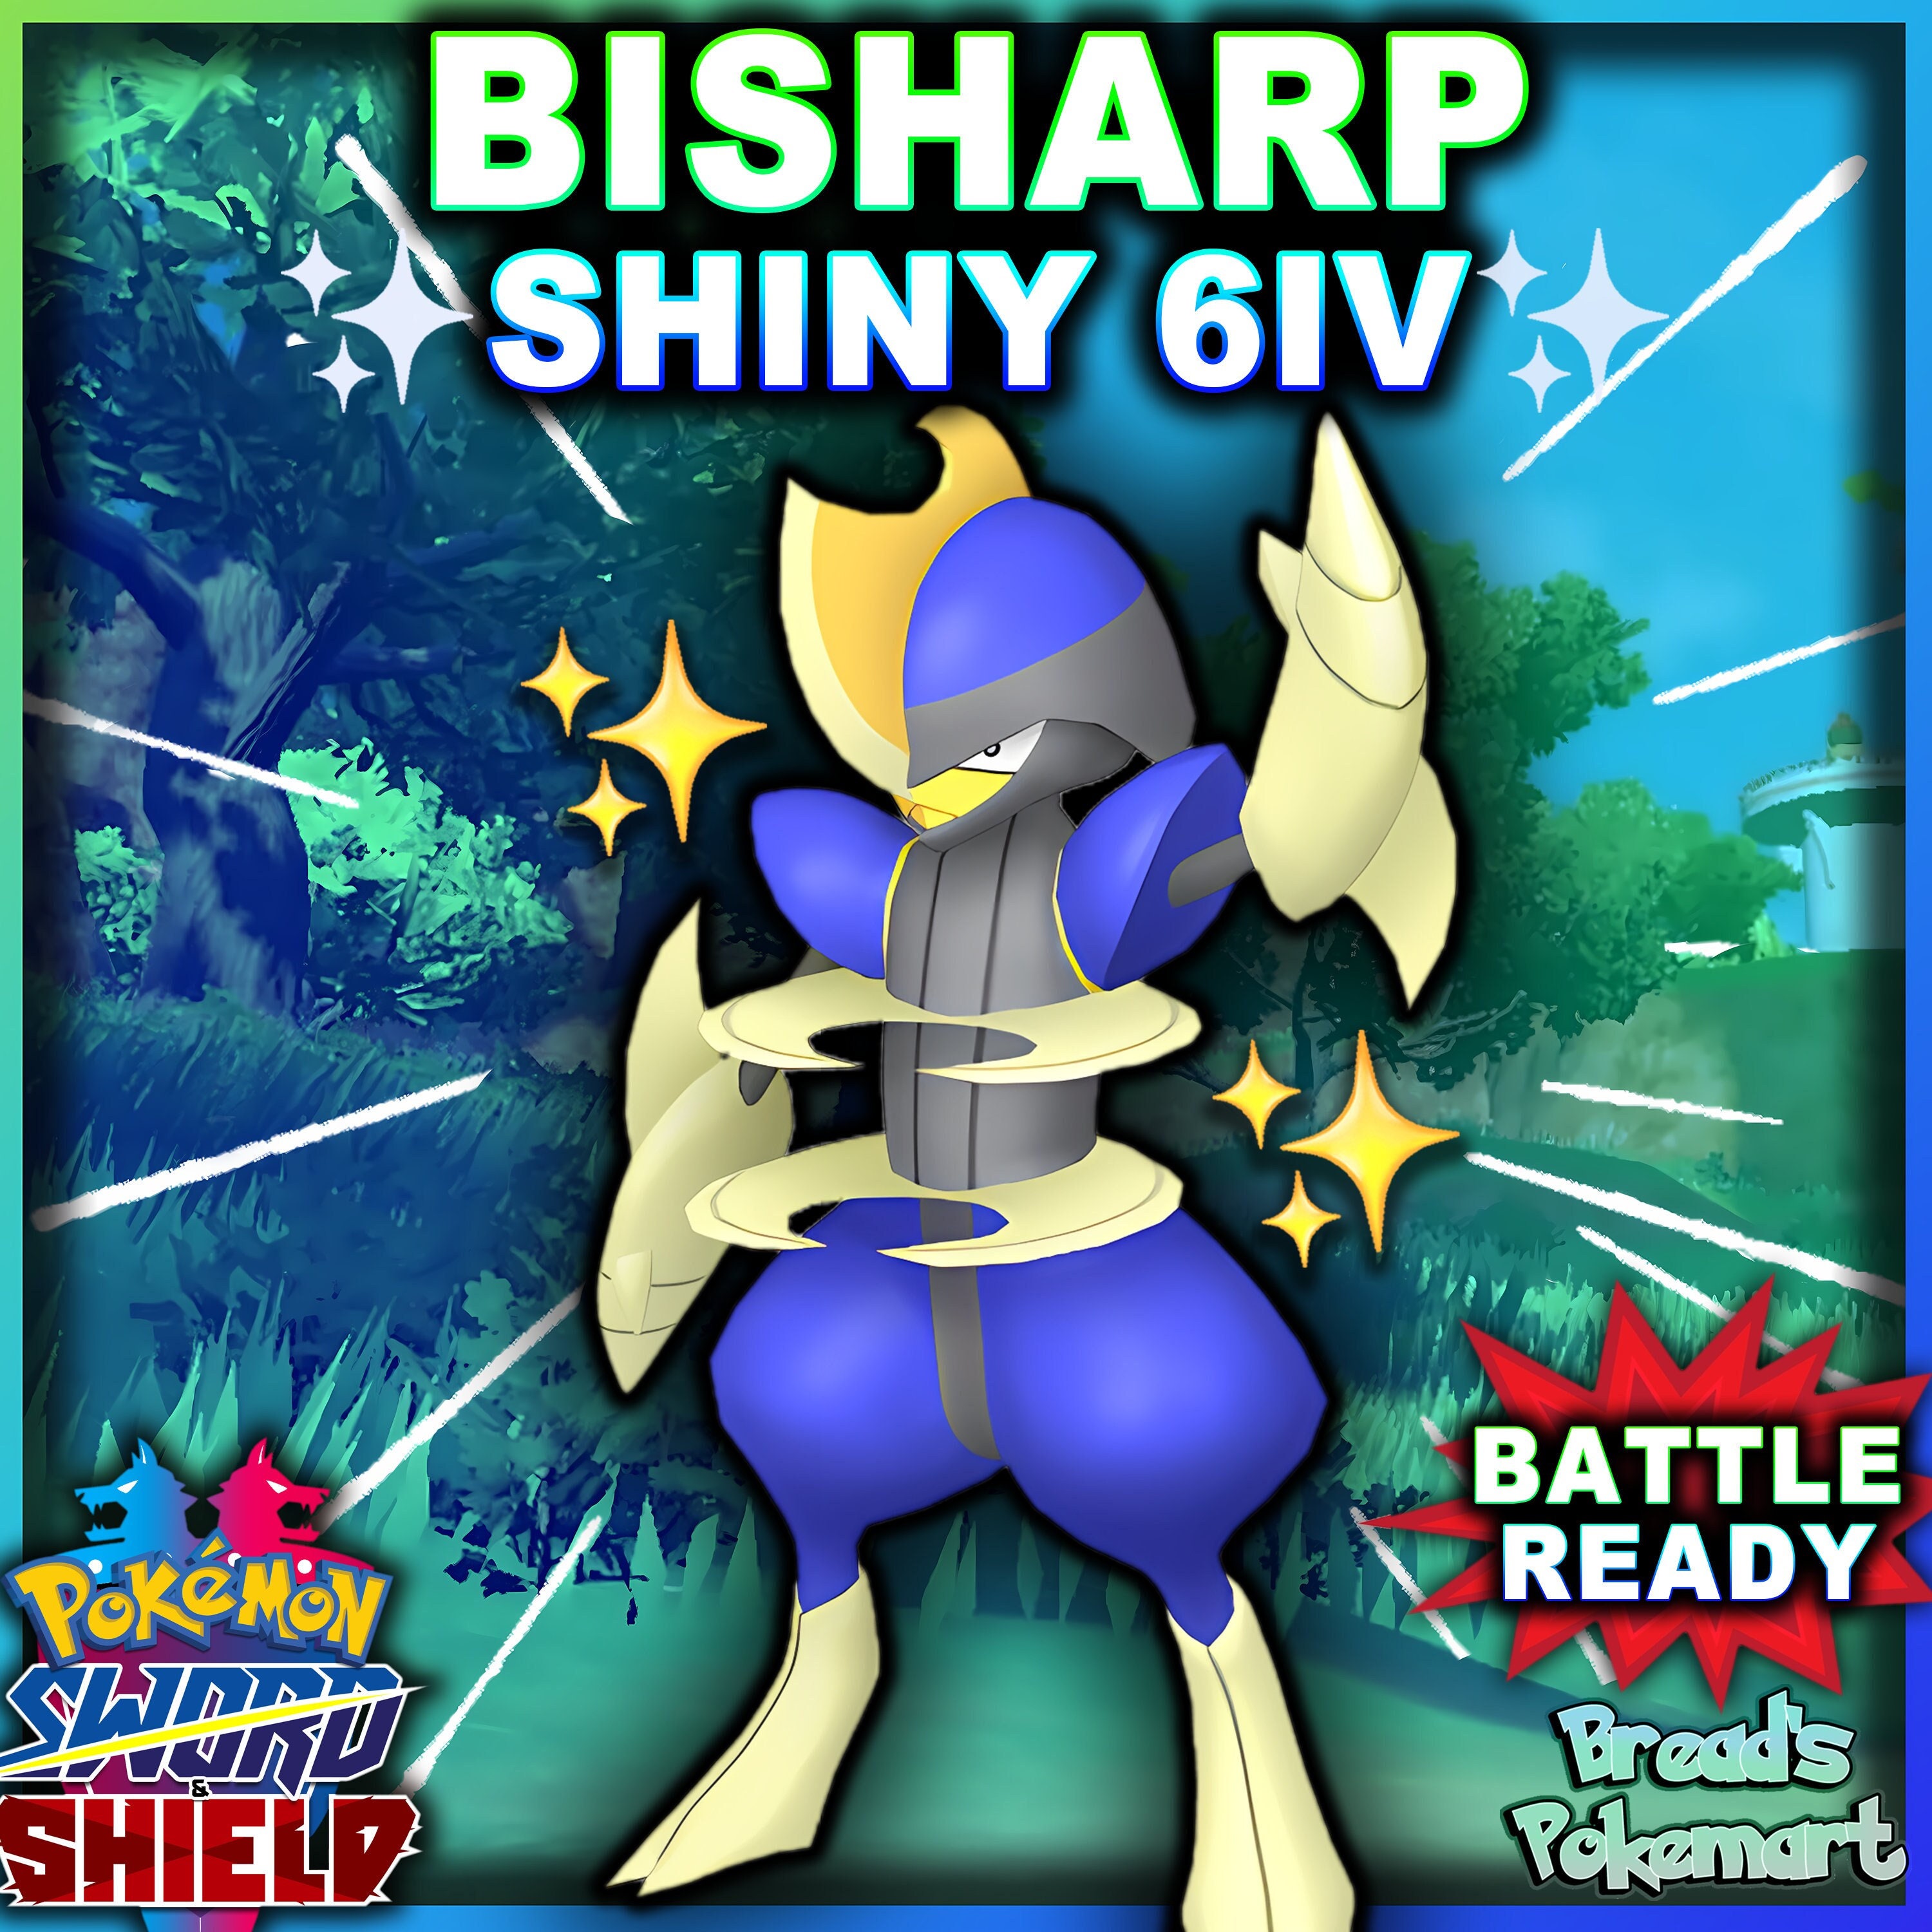 Pokemon Sword and Shield Ultra Shiny Raikou 6IV-EV Trained